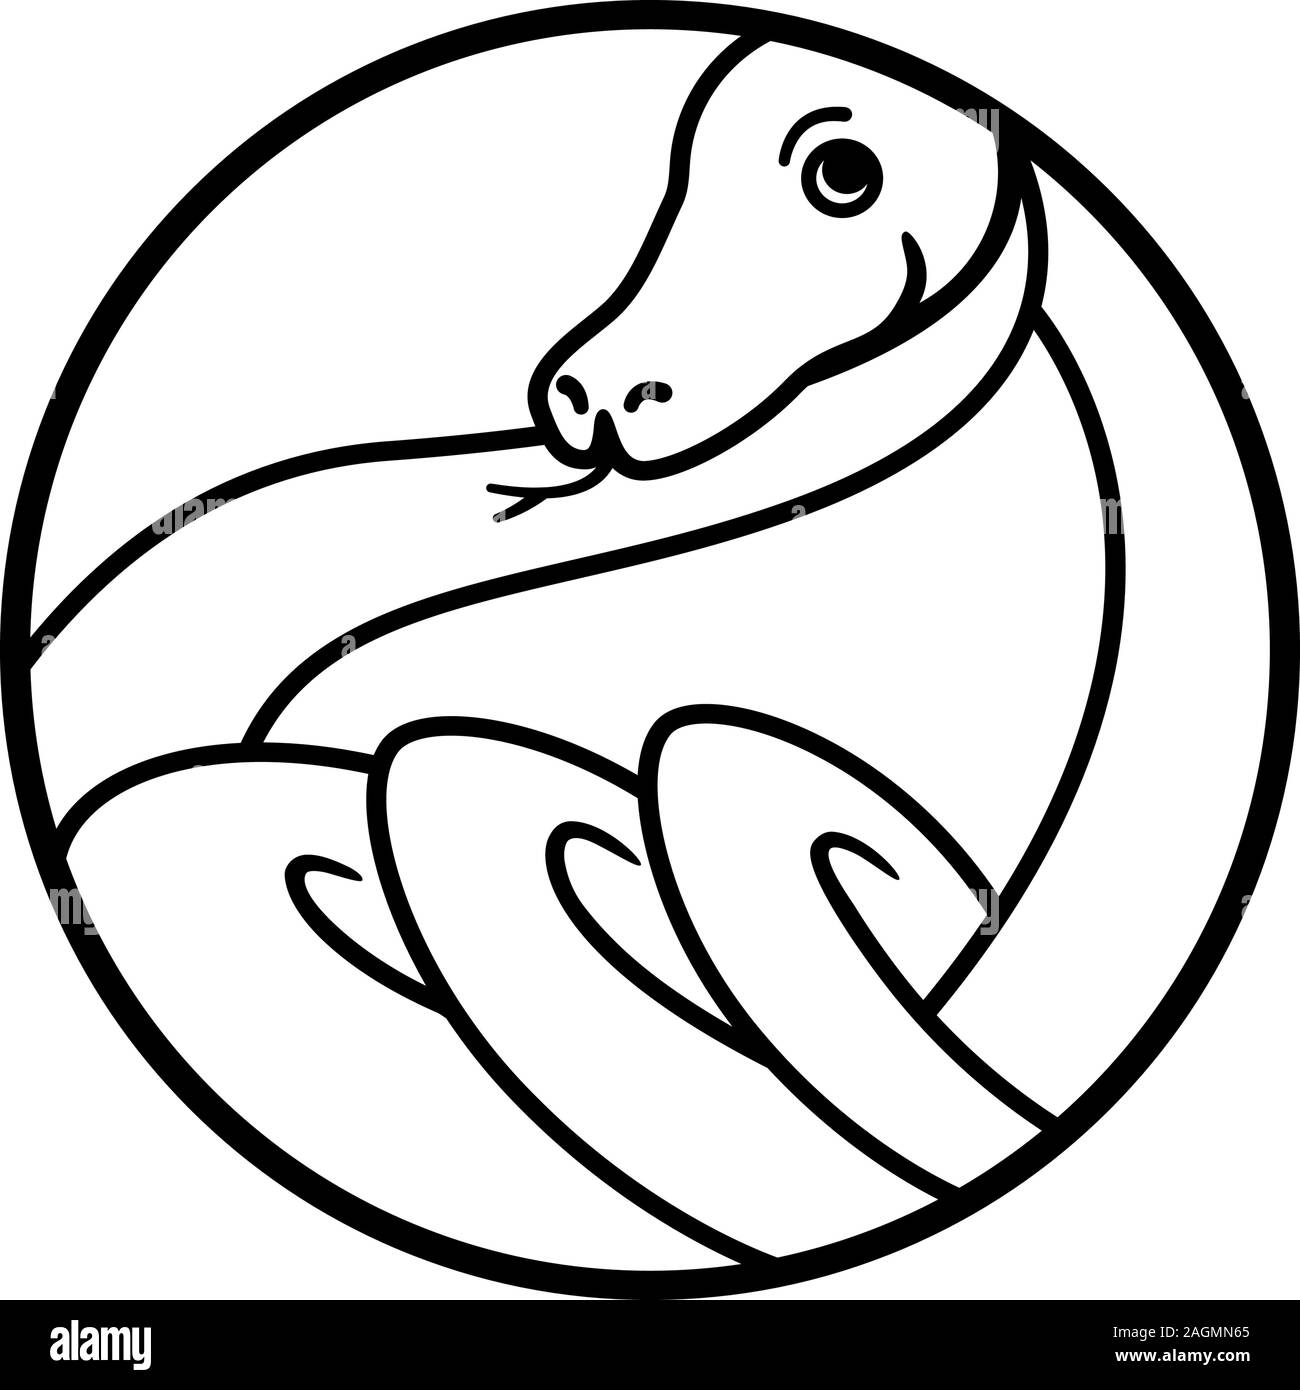 Logo Snake Outline. Forma geometrica rotonda. Anelli ritorti rettili illustrazione grafica per tatuaggio, adesivi, logotipo. Illustrazione Vettoriale